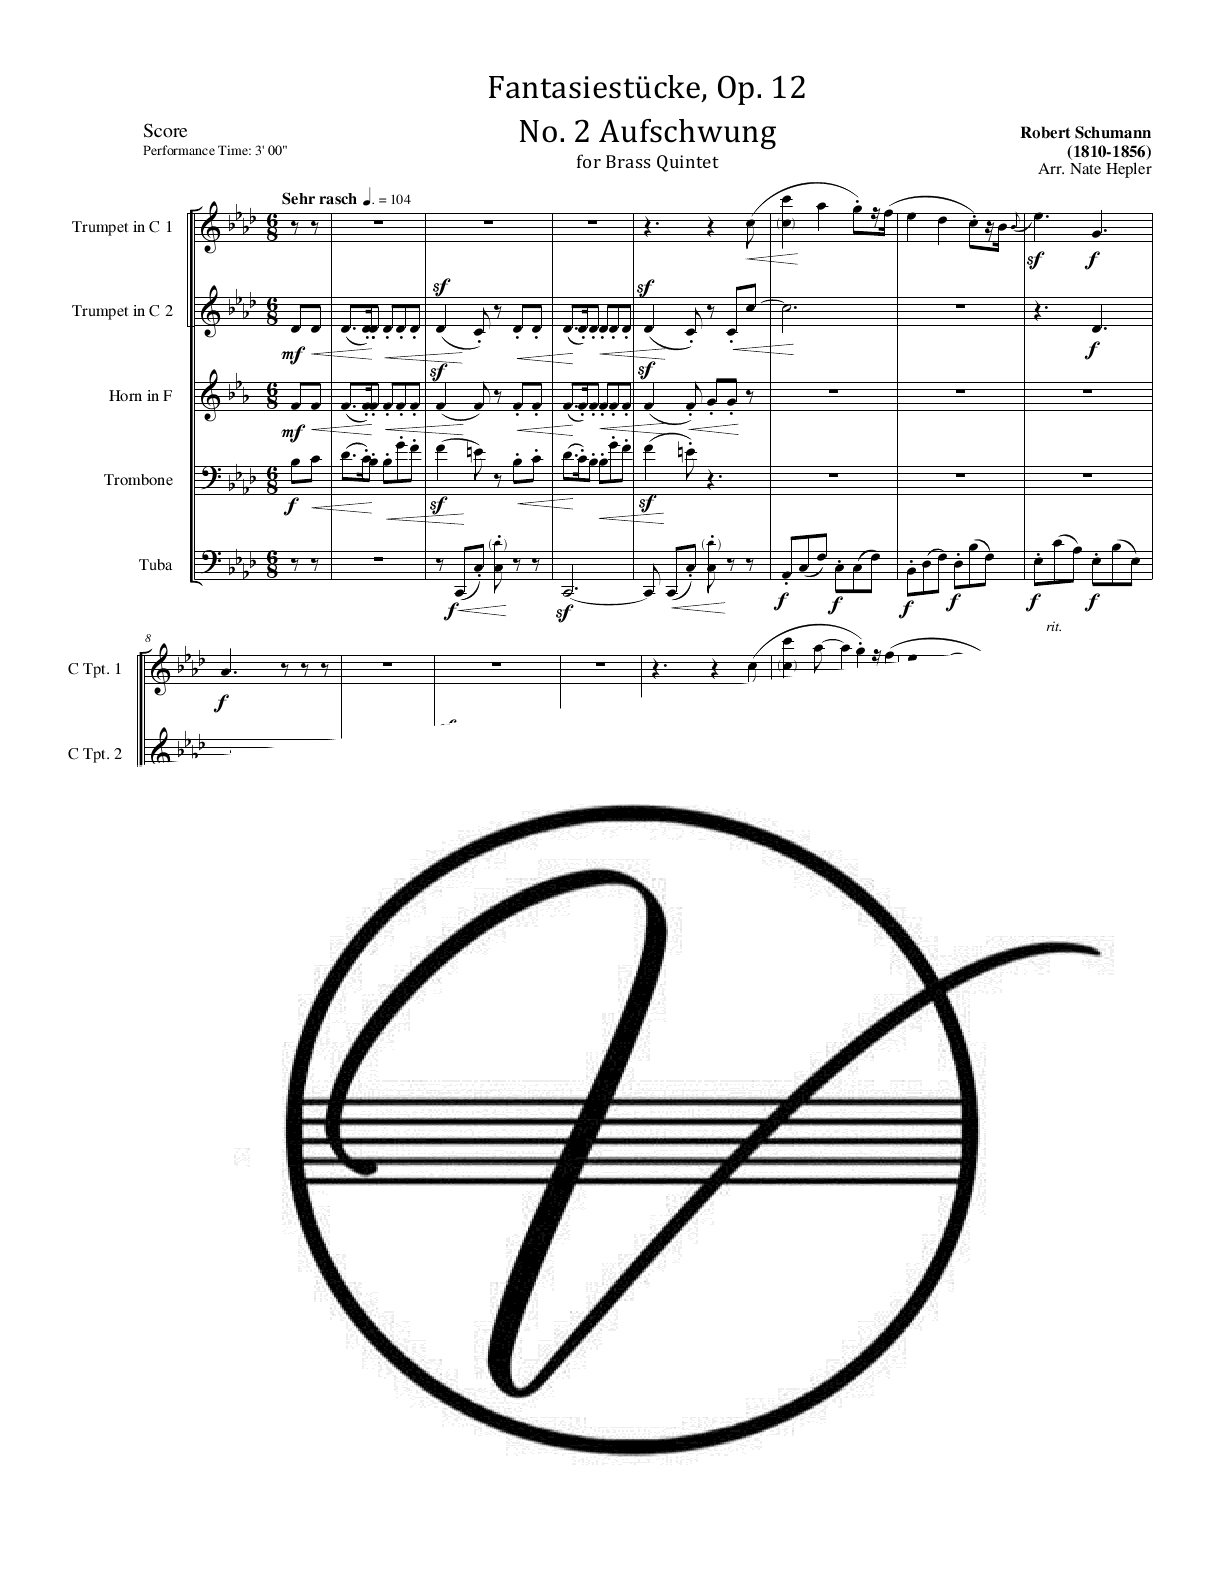 Schumann - Fantasiestucke, Op. 12, No. 2 - Aufschwung (BQ) - Click Image to Close